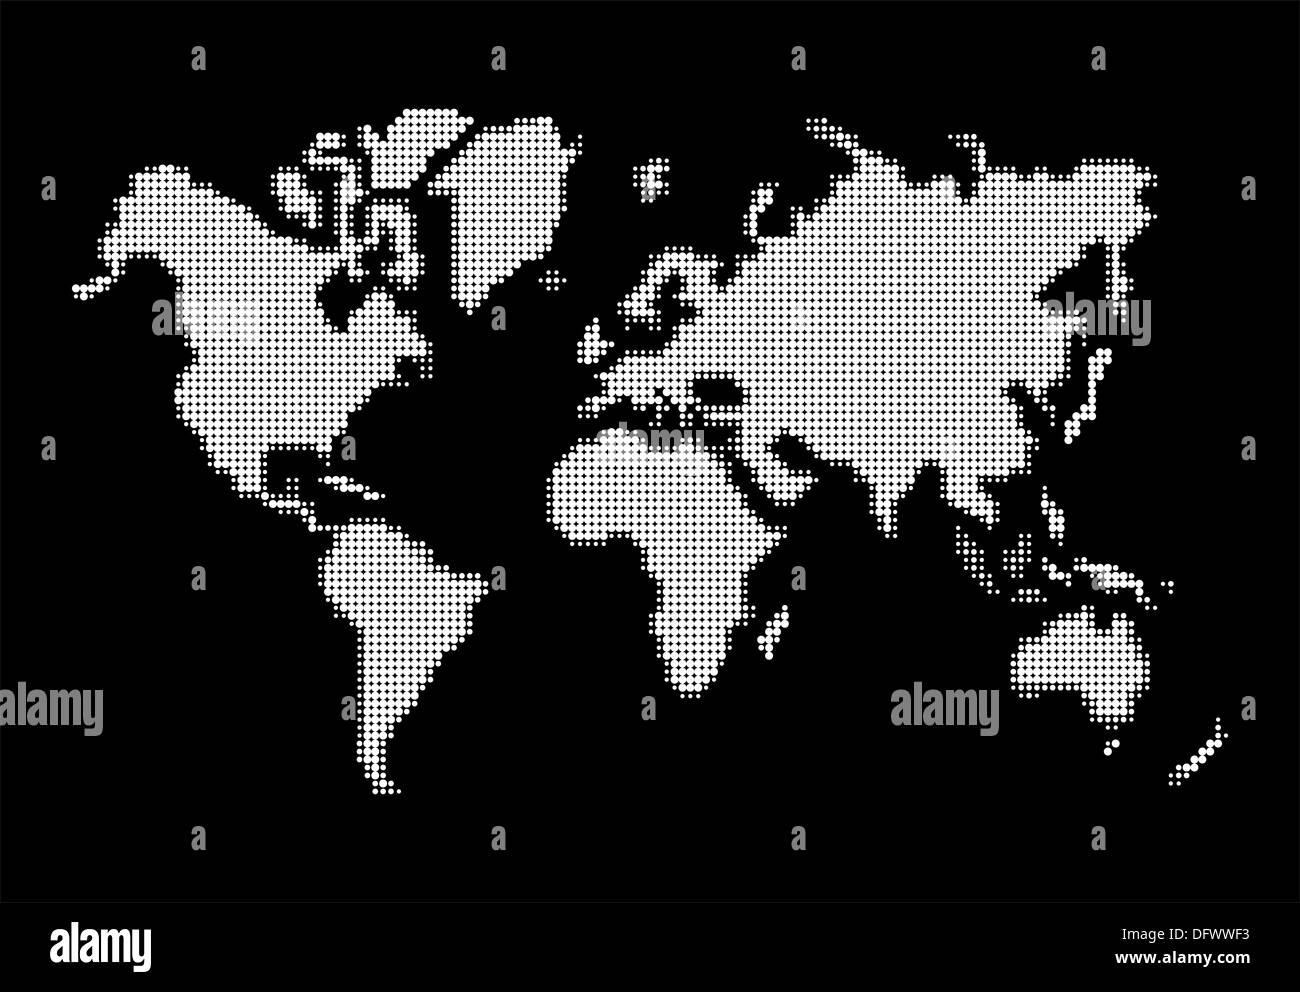 Welt Karte, weiße Punkte Atlas Zusammensetzung. EPS10 Vektor-Datei organisiert in Schichten für die einfache Bearbeitung. Stockfoto